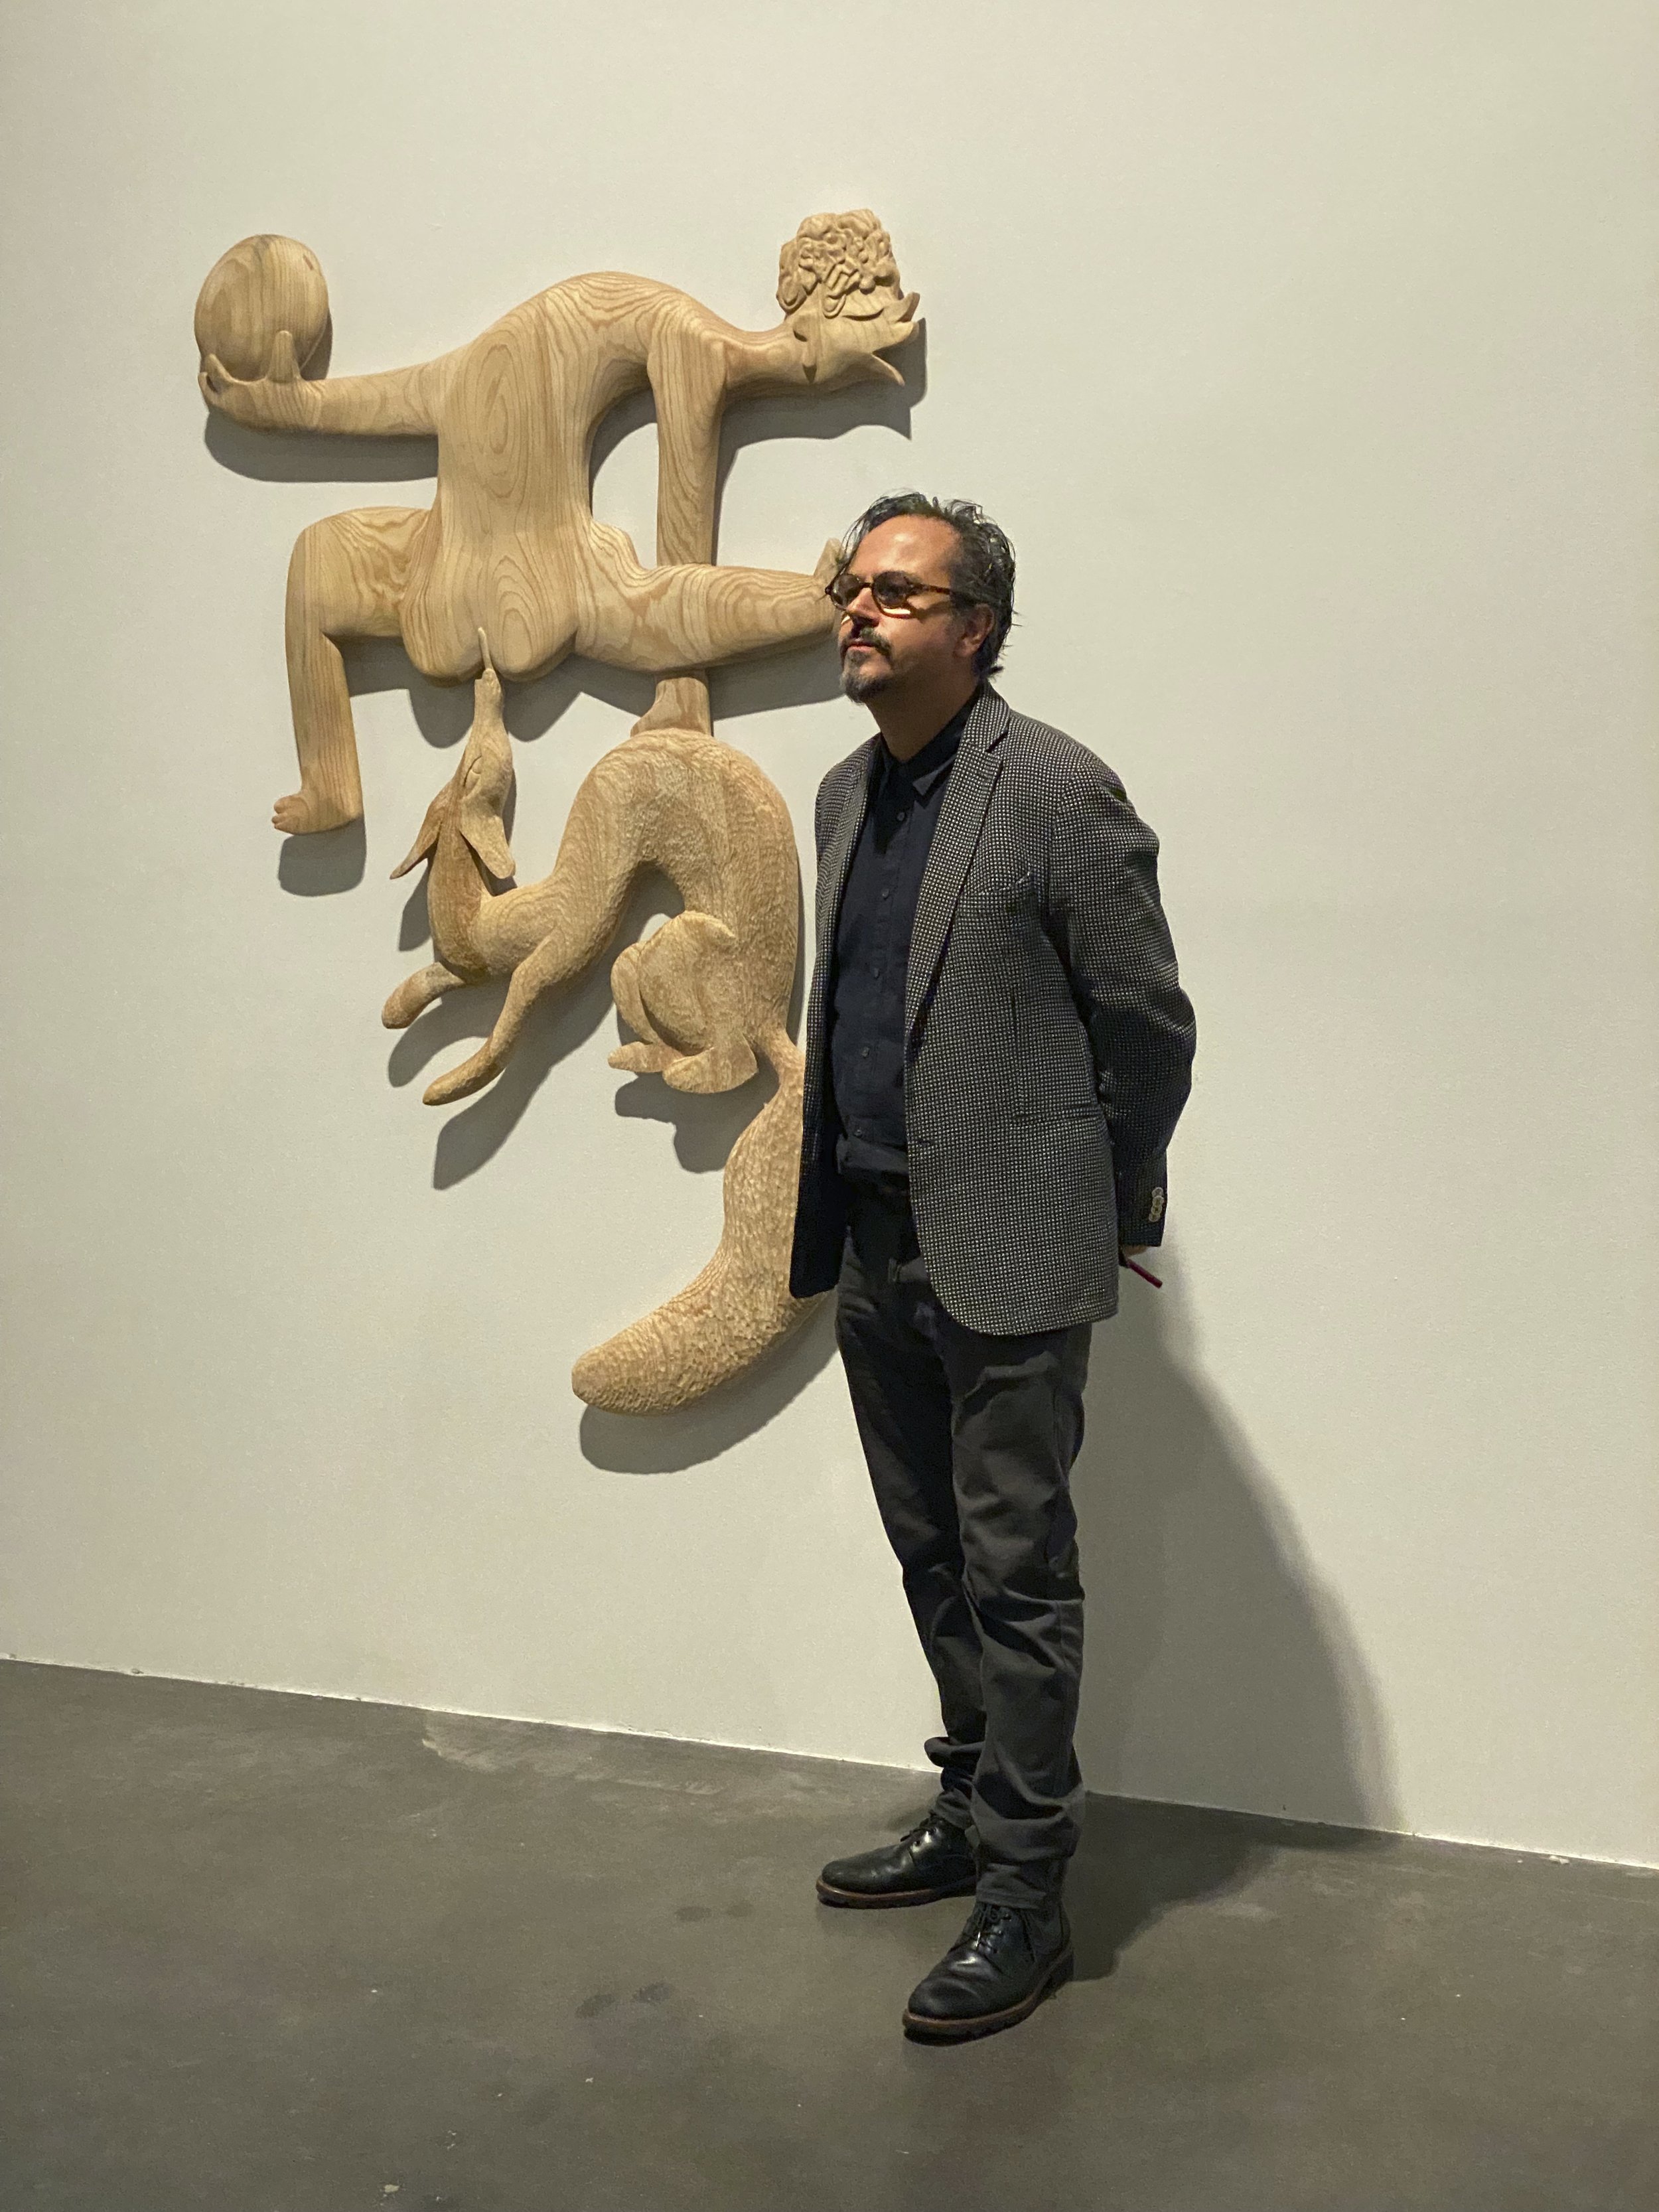   Damián Ortega  en la exposición “Circo Erótico. Serguéi Eisenstein: dibujos”, kurimanzutto, Ciudad de México, septiembre 2022. Foto por La Consultoría. 